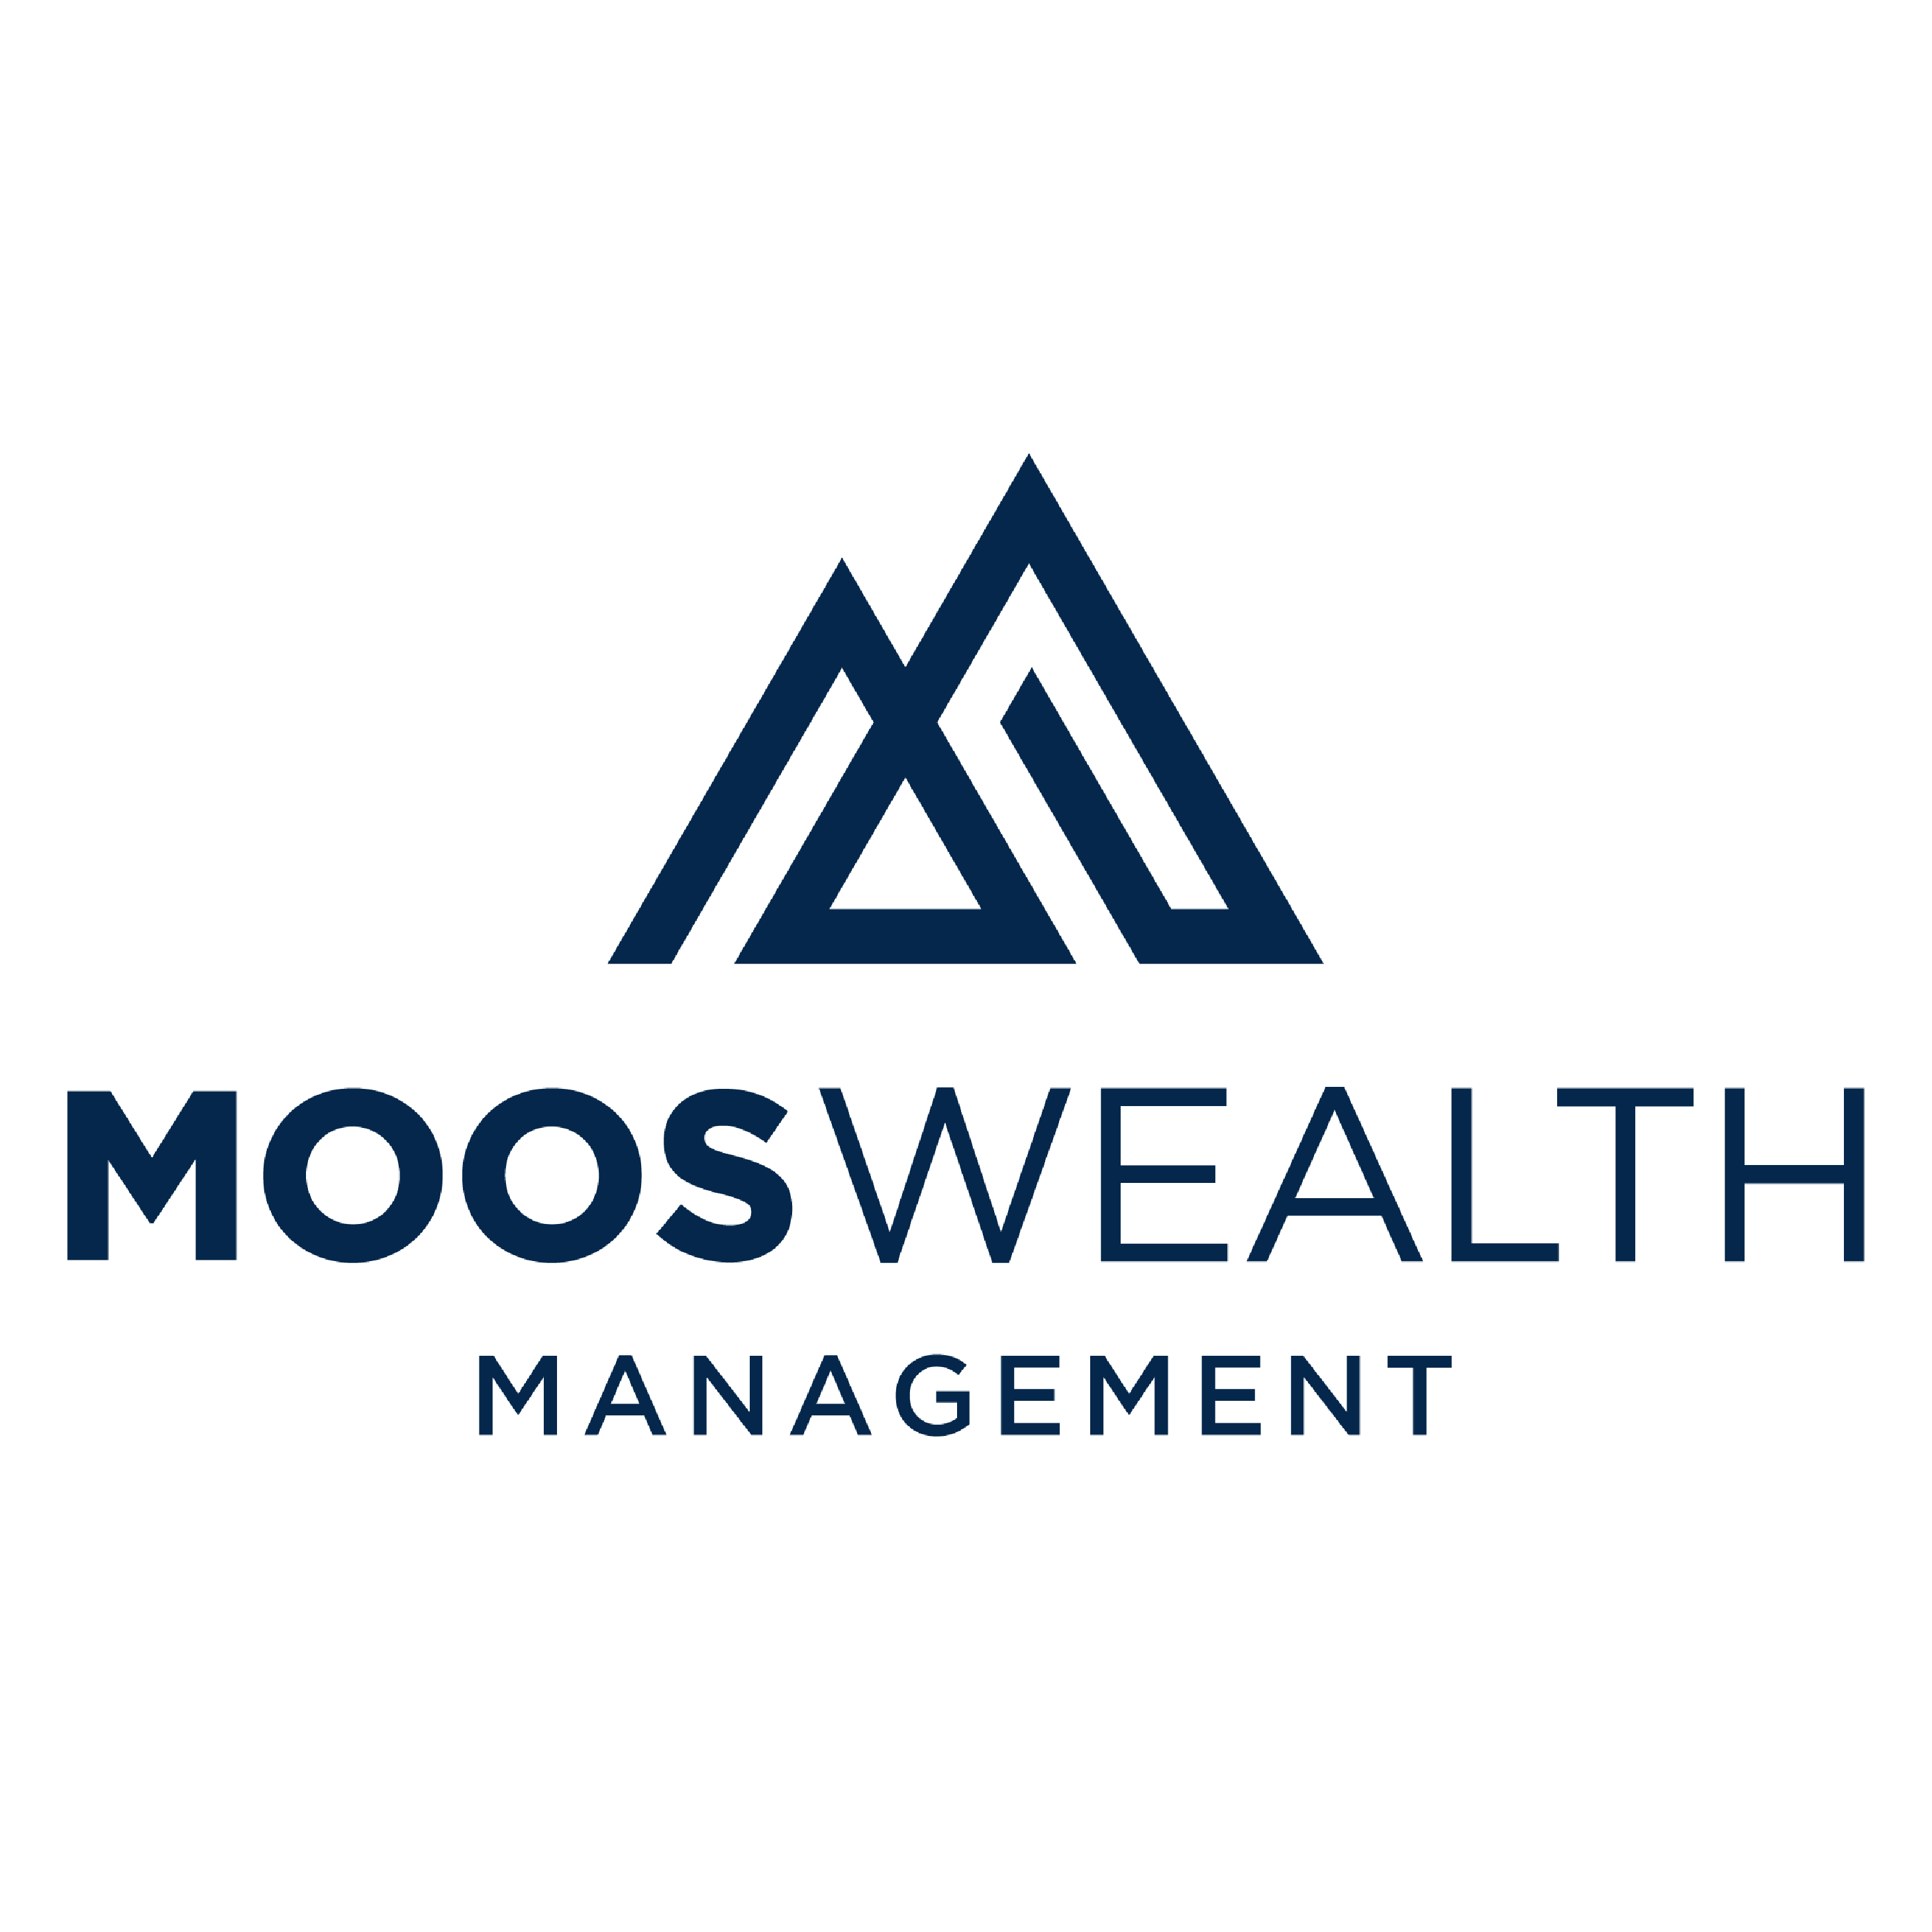 Moos Wealth Management